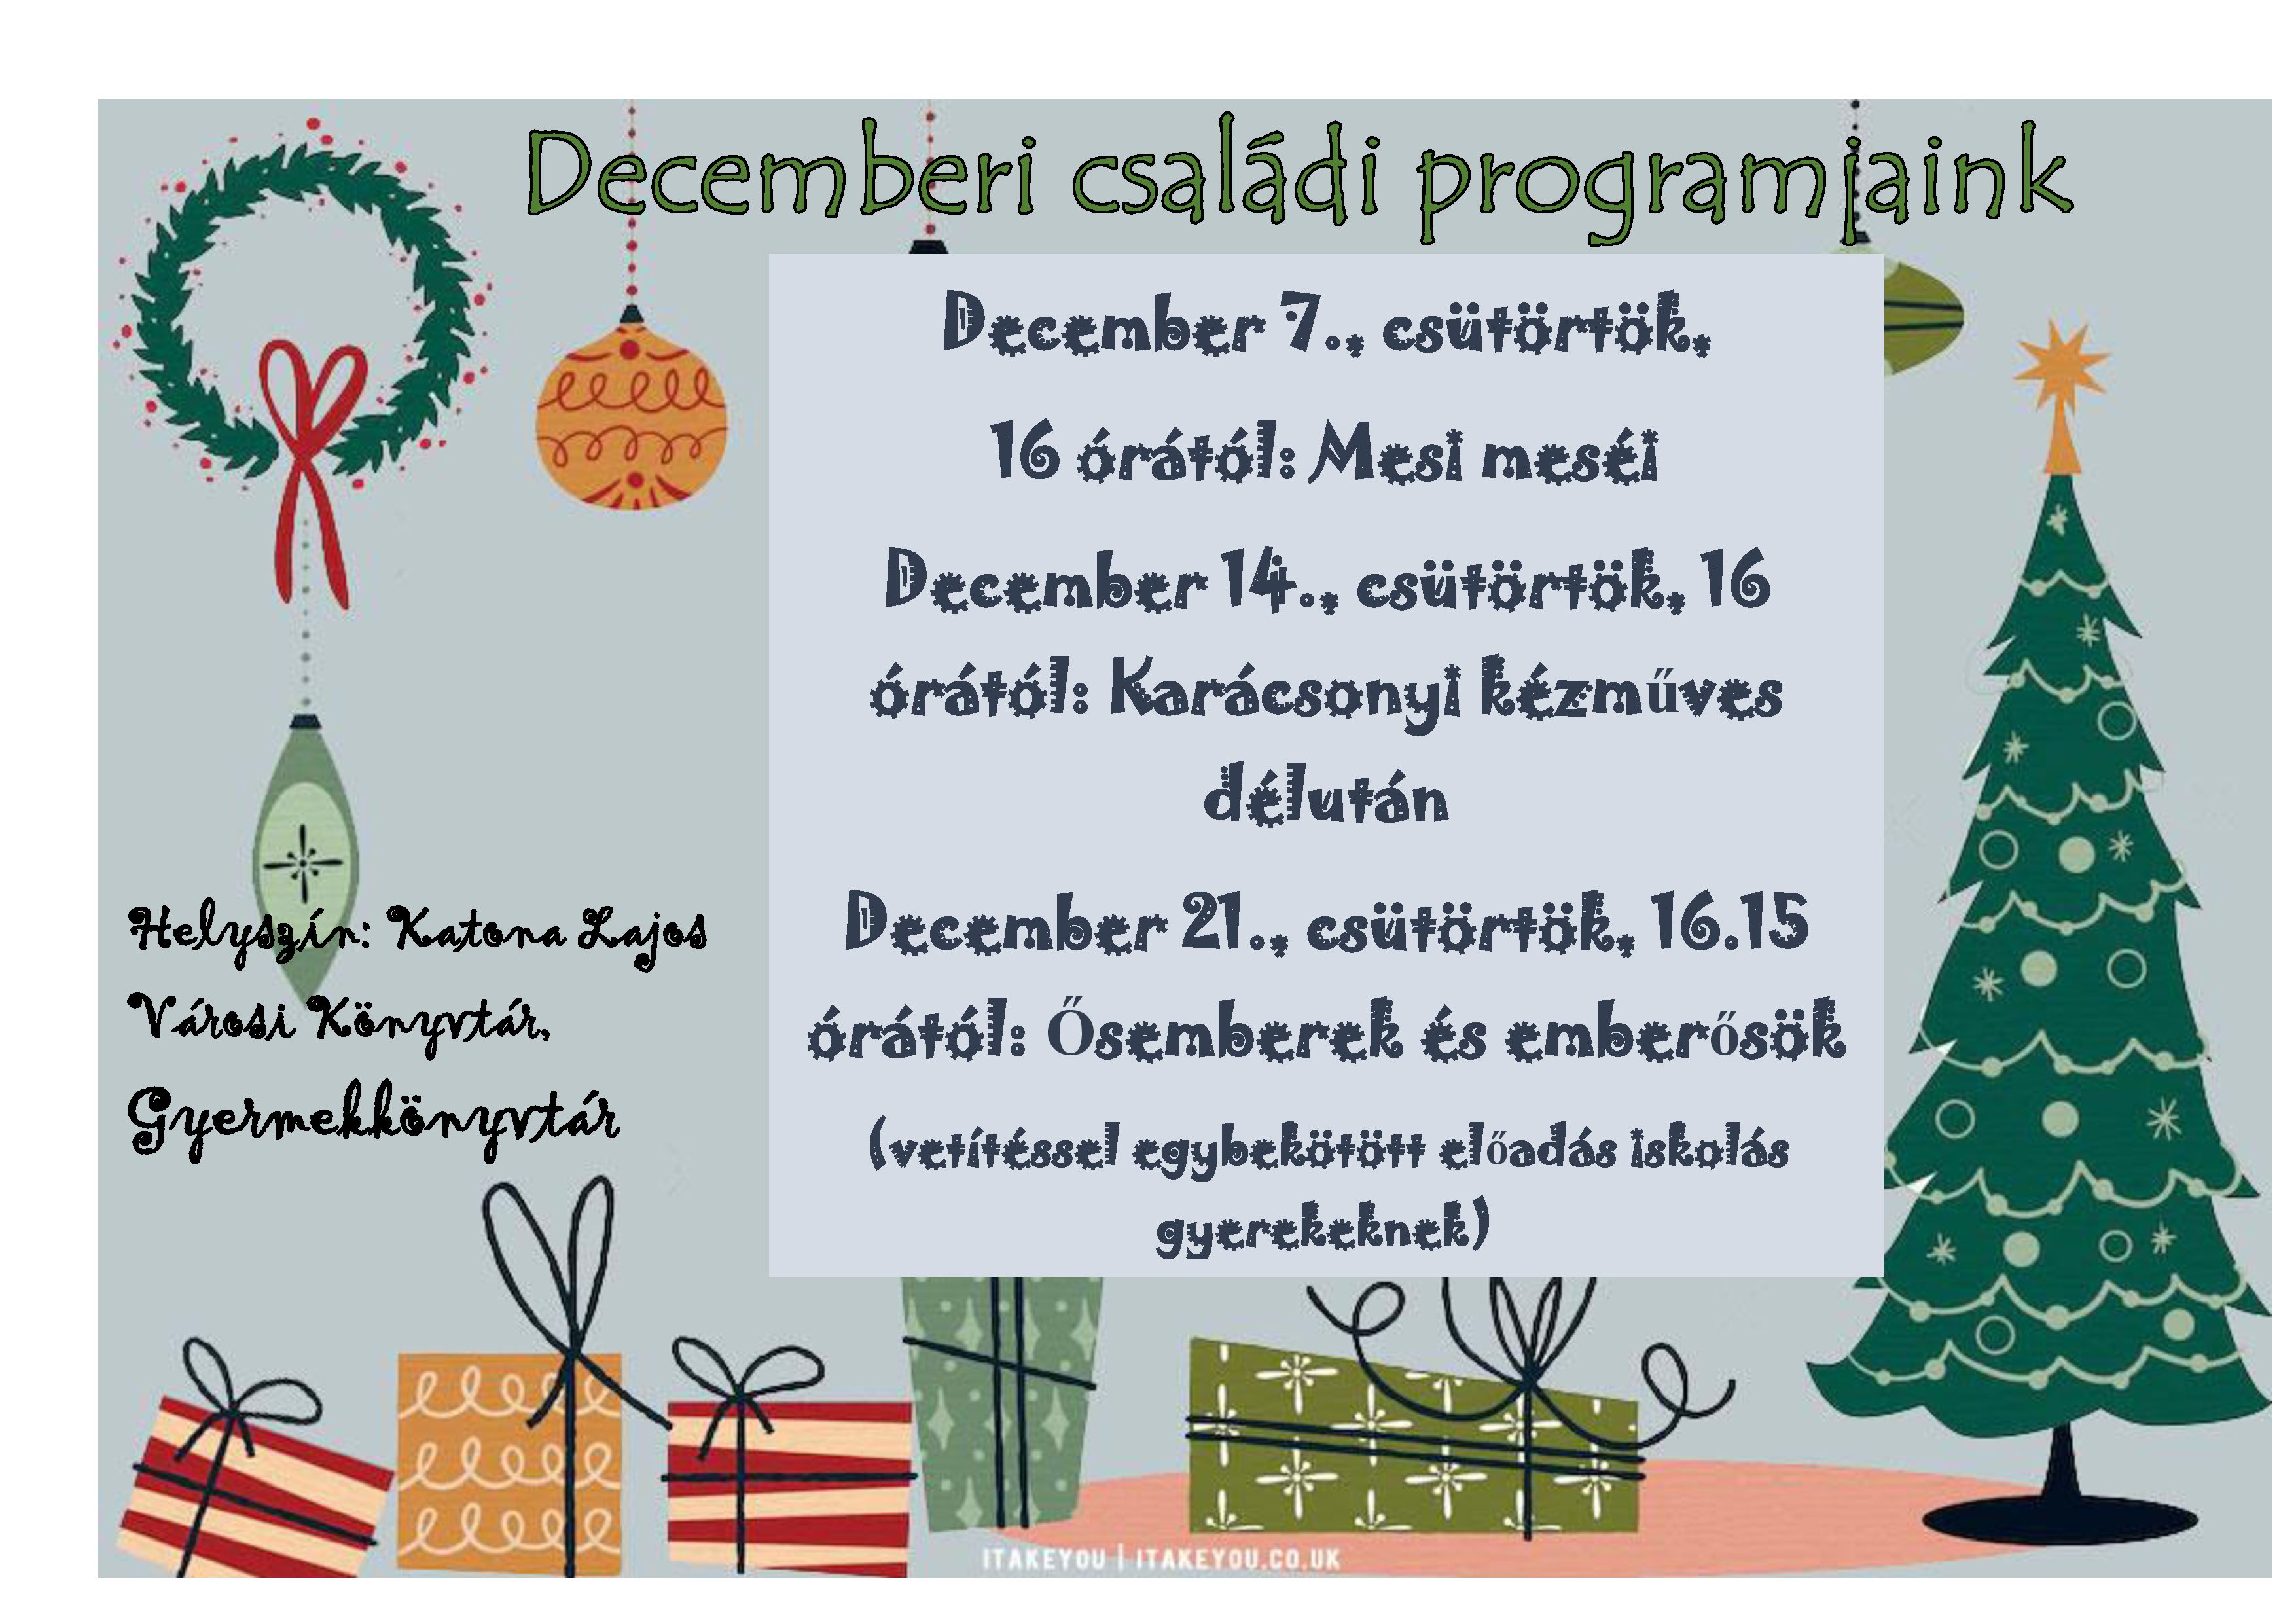 Decemberi családi programjaink